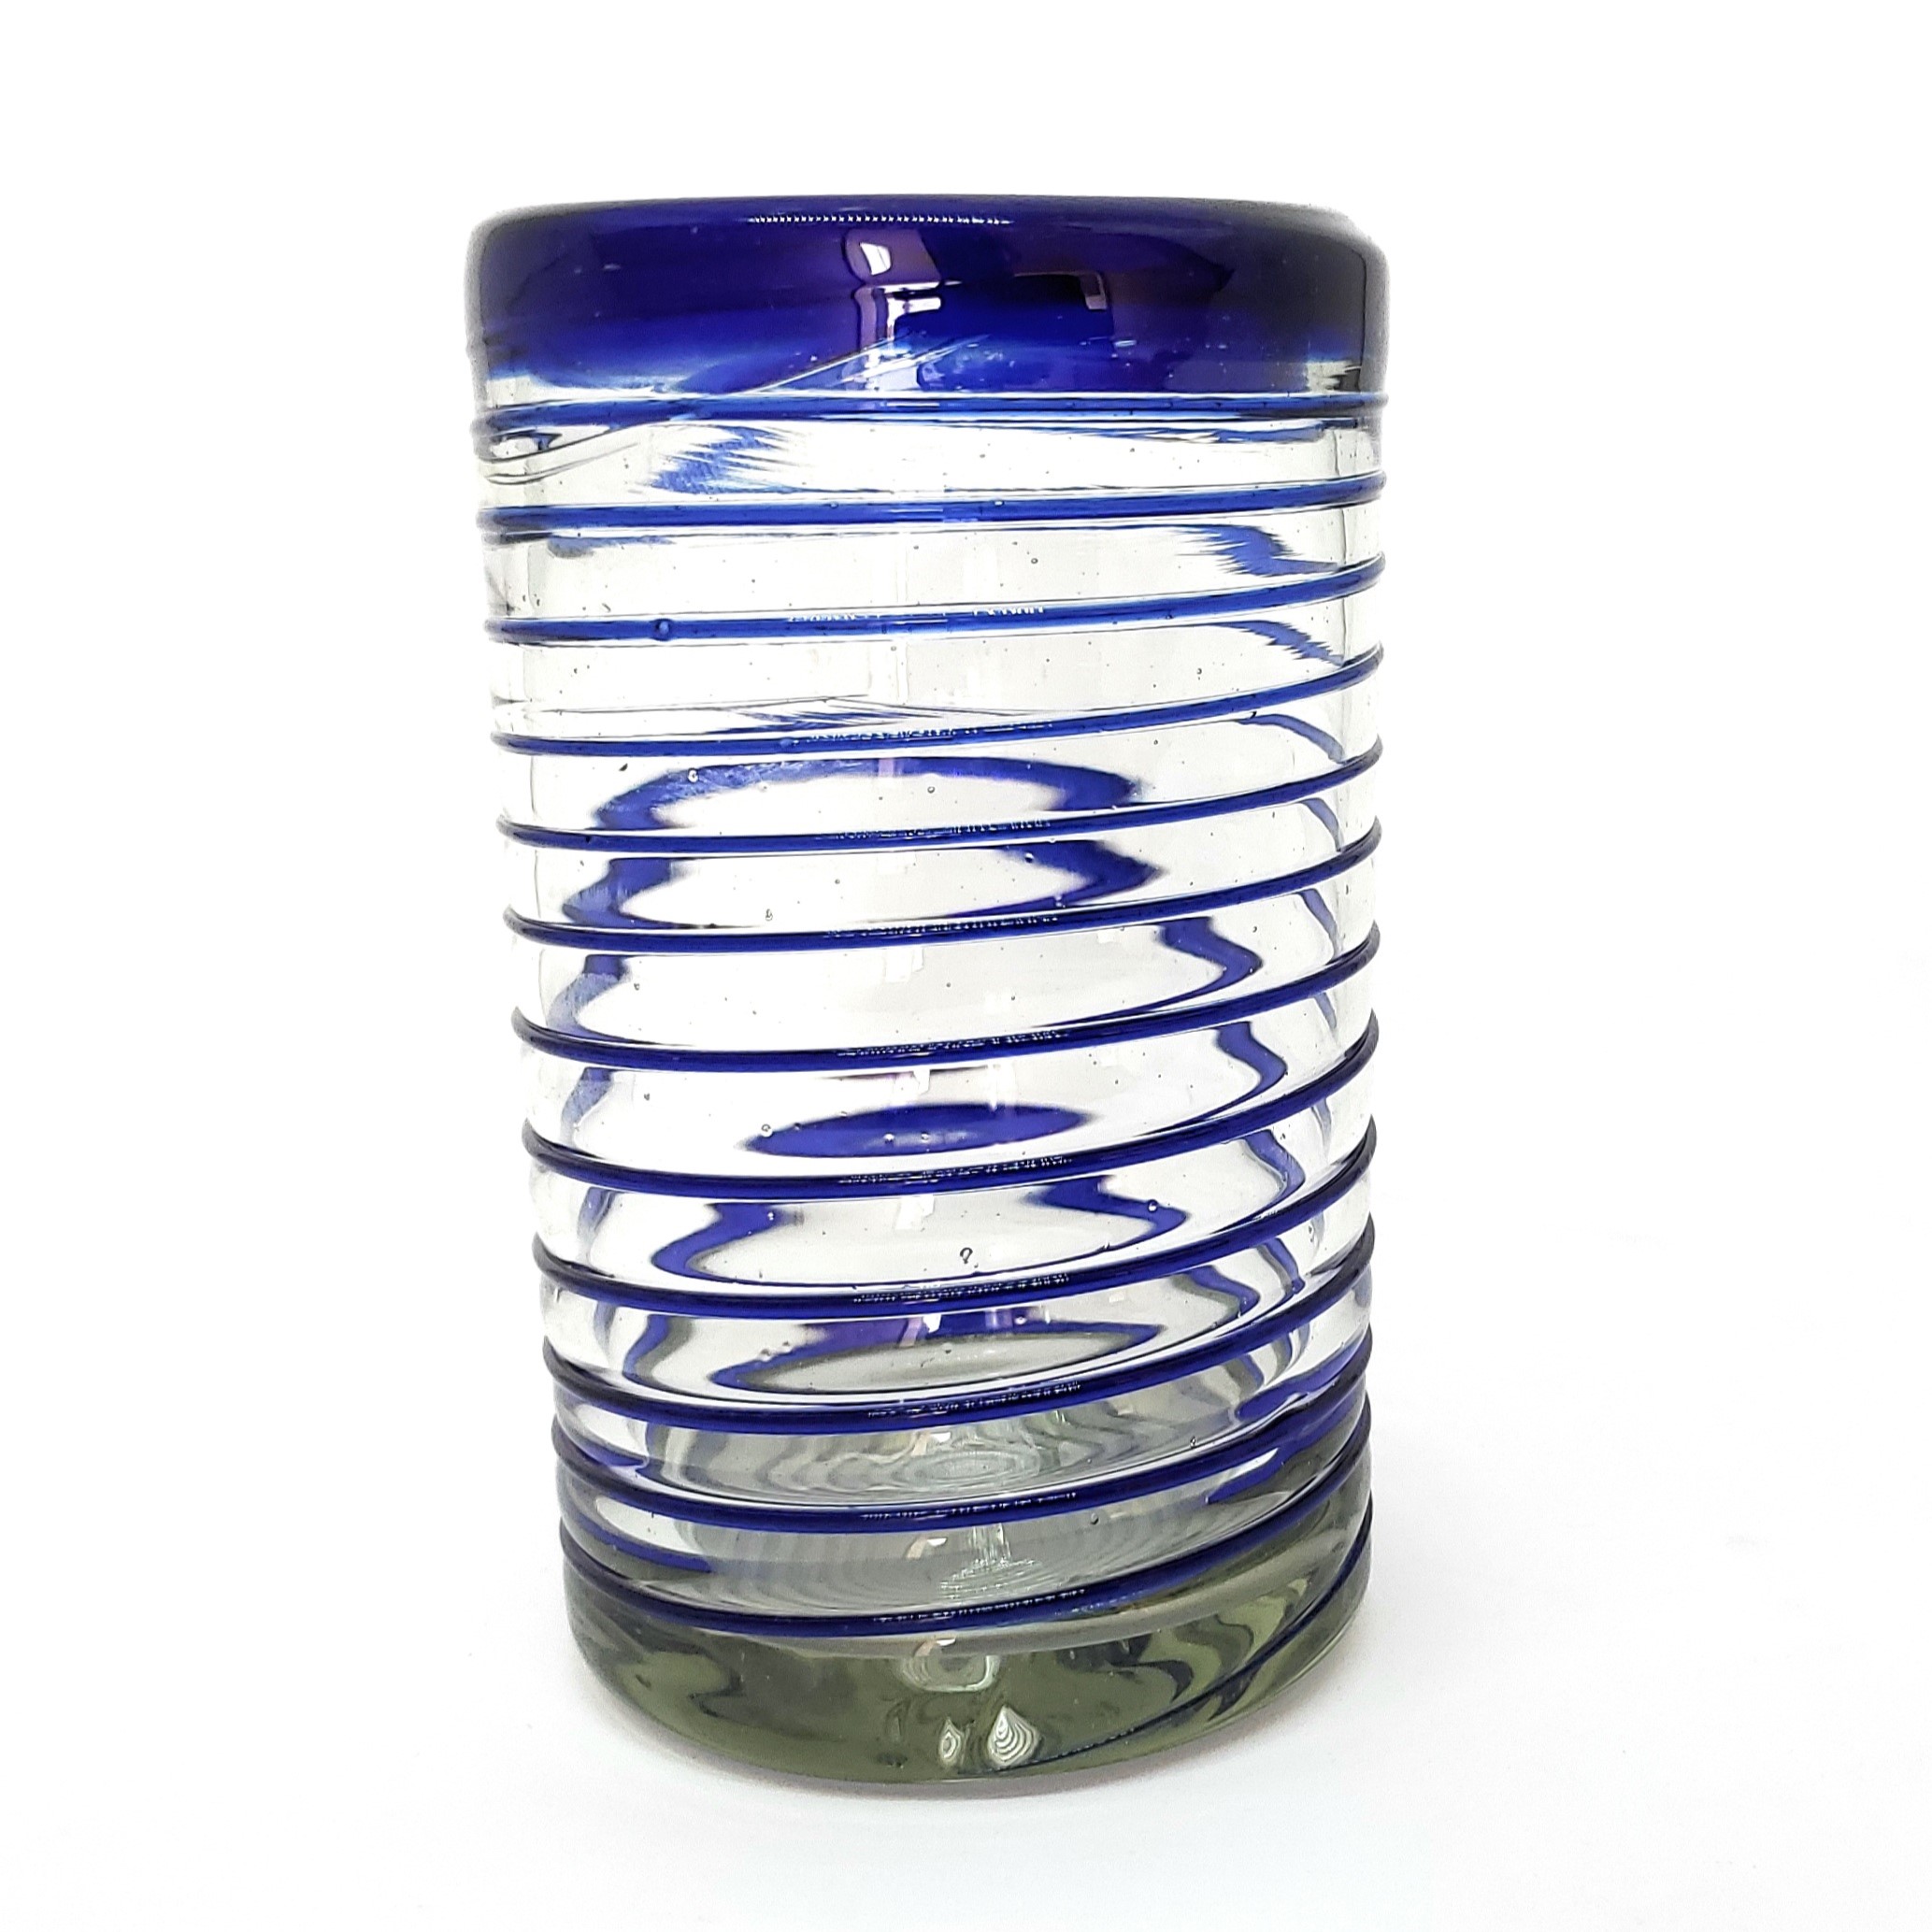 Espiral al Mayoreo / vasos grandes con espiral azul cobalto / �stos elegantes vasos cubiertos con una espiral azul cobalto dar�n un toque artesanal a su mesa.